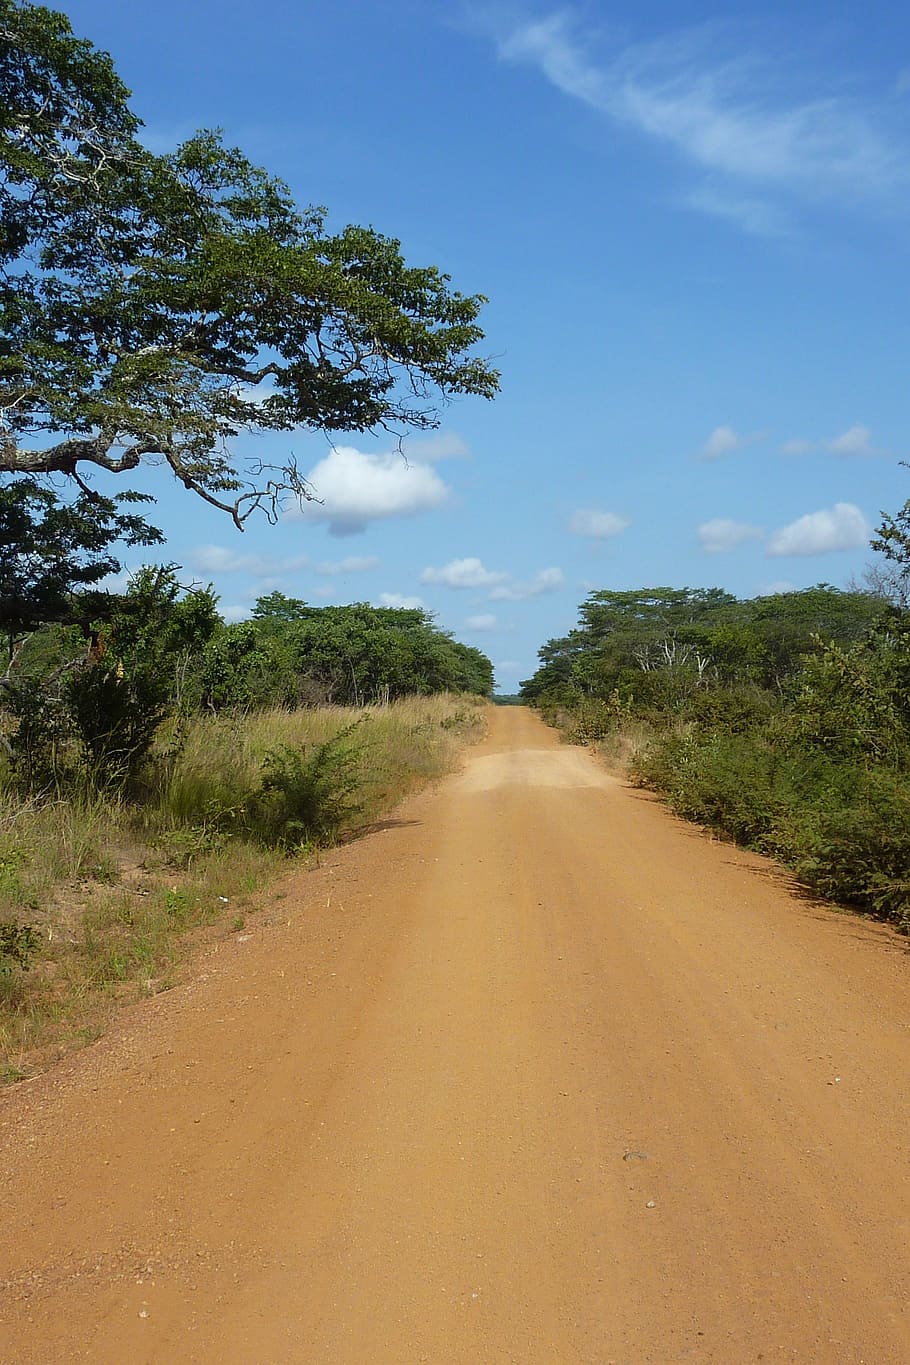 タンザニア, 道路, ほこり, 空, 木, 砂, 進むべき道, 方向, 植物, 交通